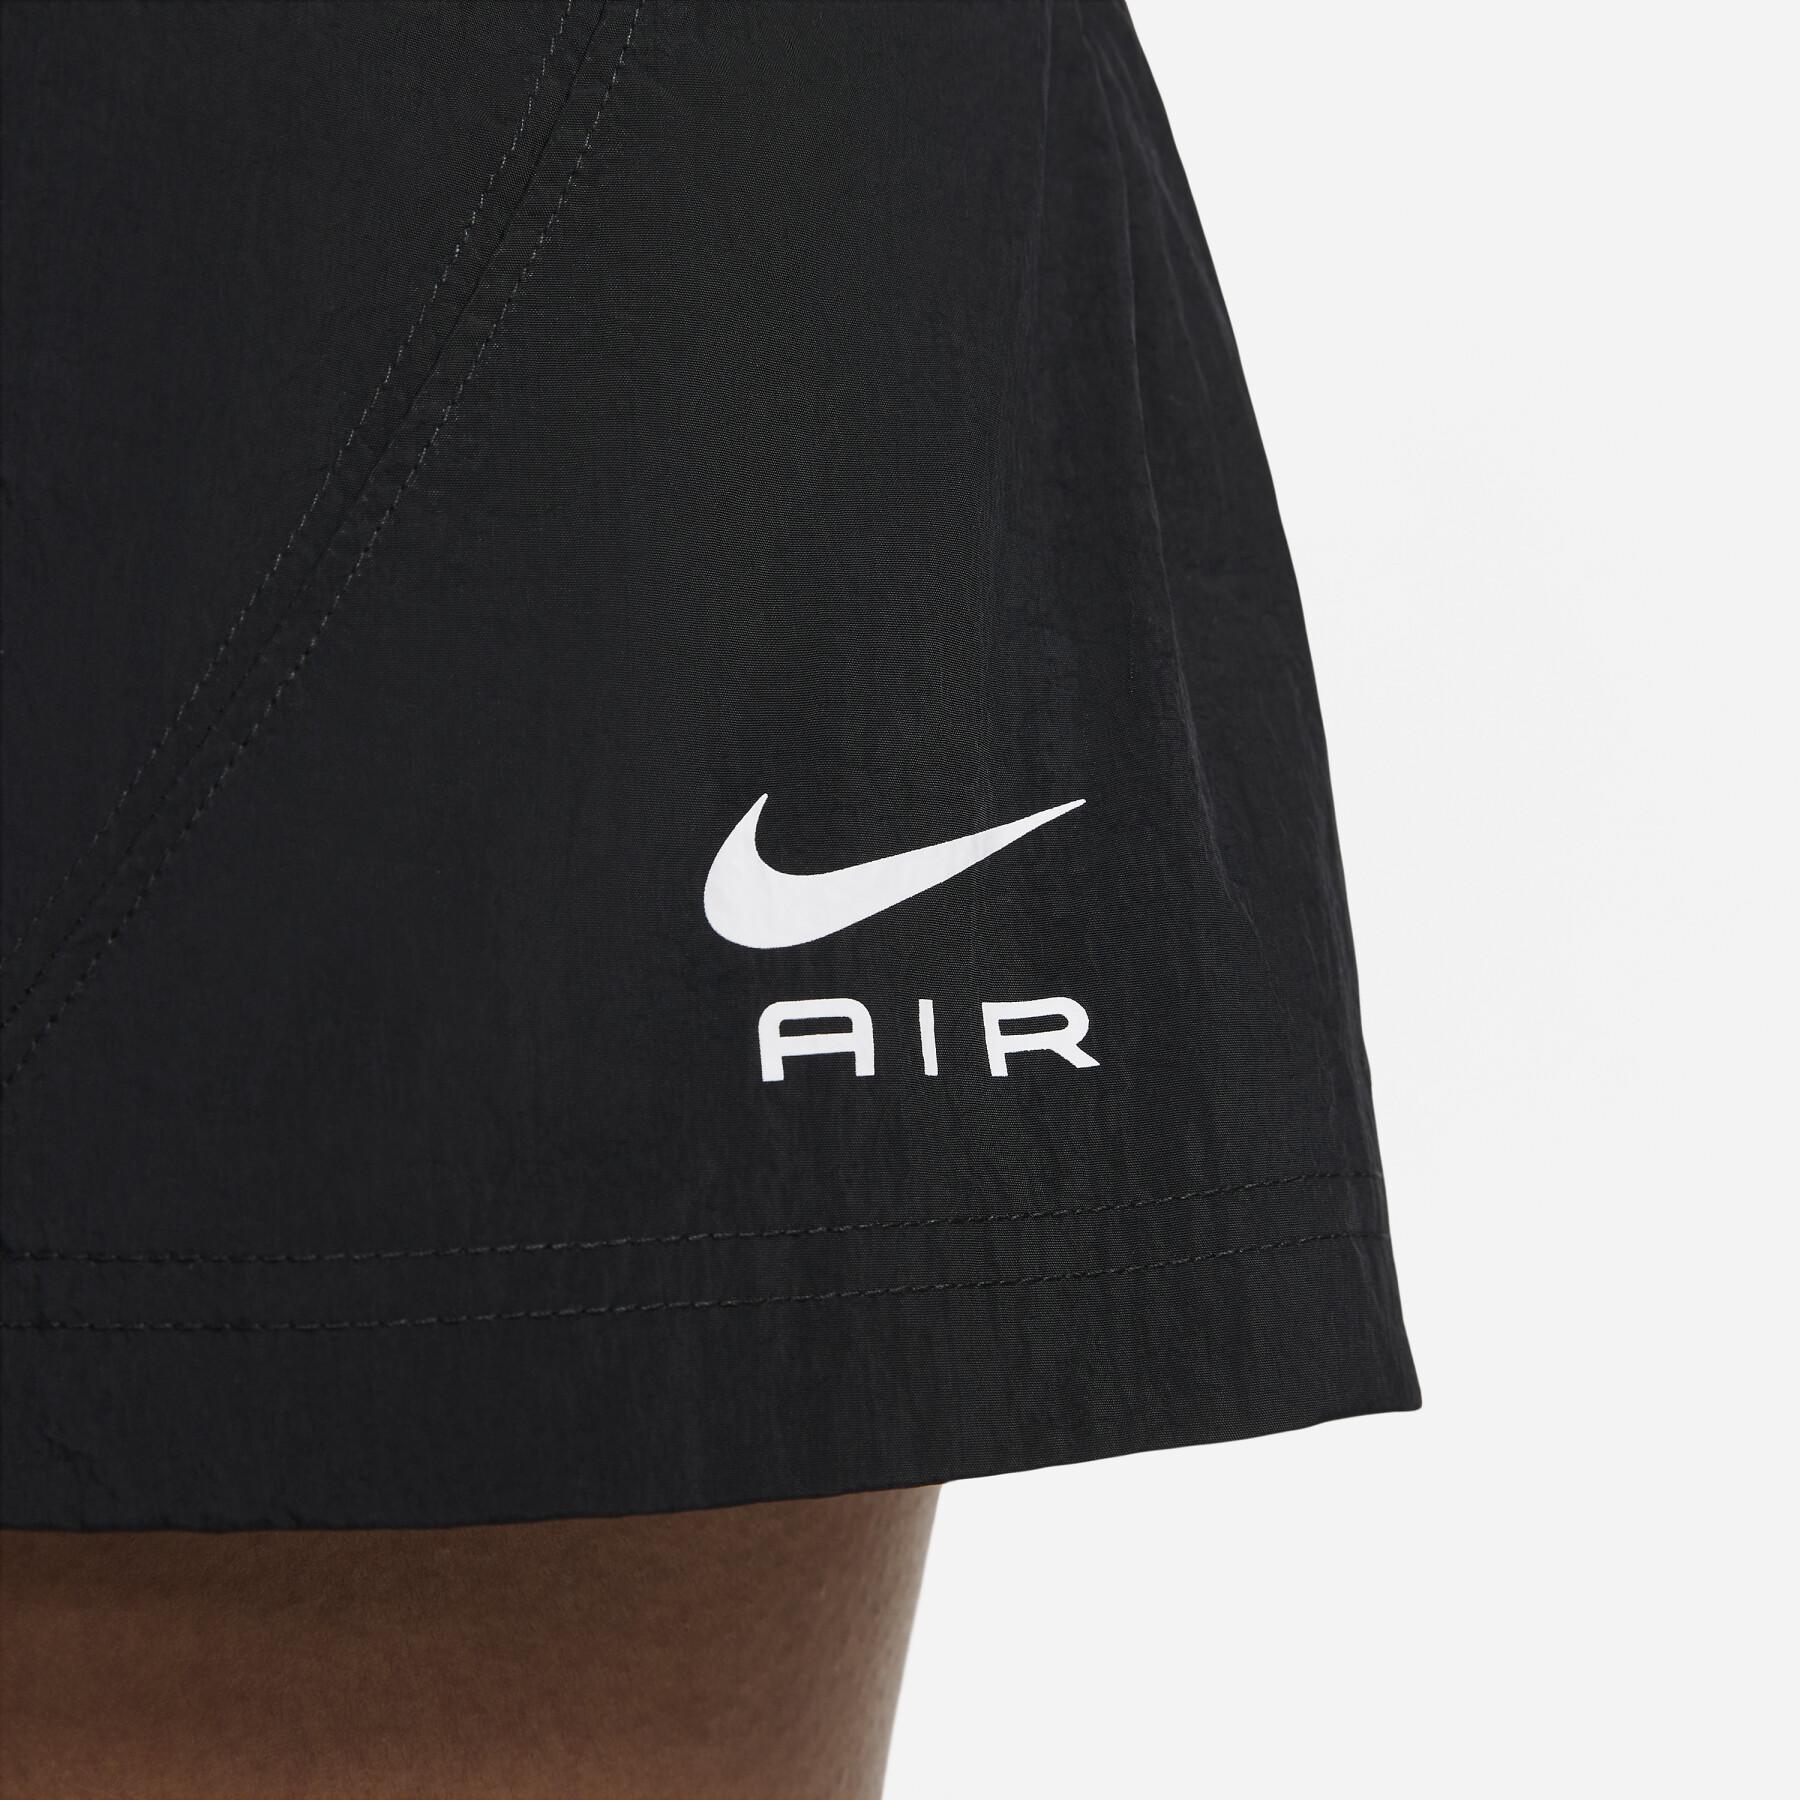 Minirok voor vrouwen Nike Air